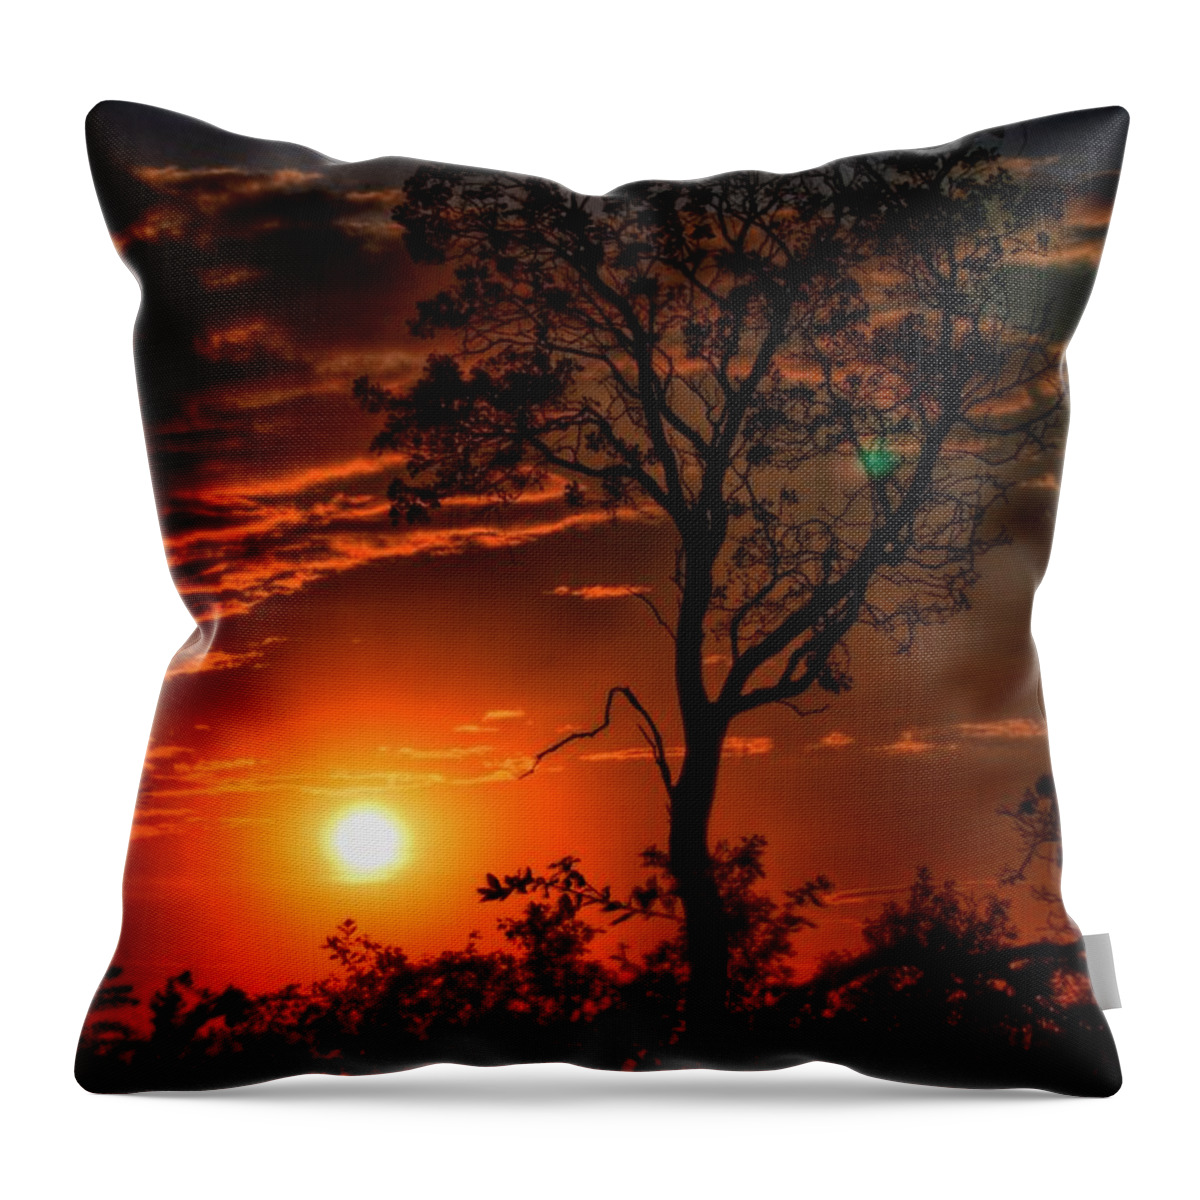 Lone Manzanita Sunset Throw Pillow featuring the photograph Lone Manzanita Sunset by Patrick Witz